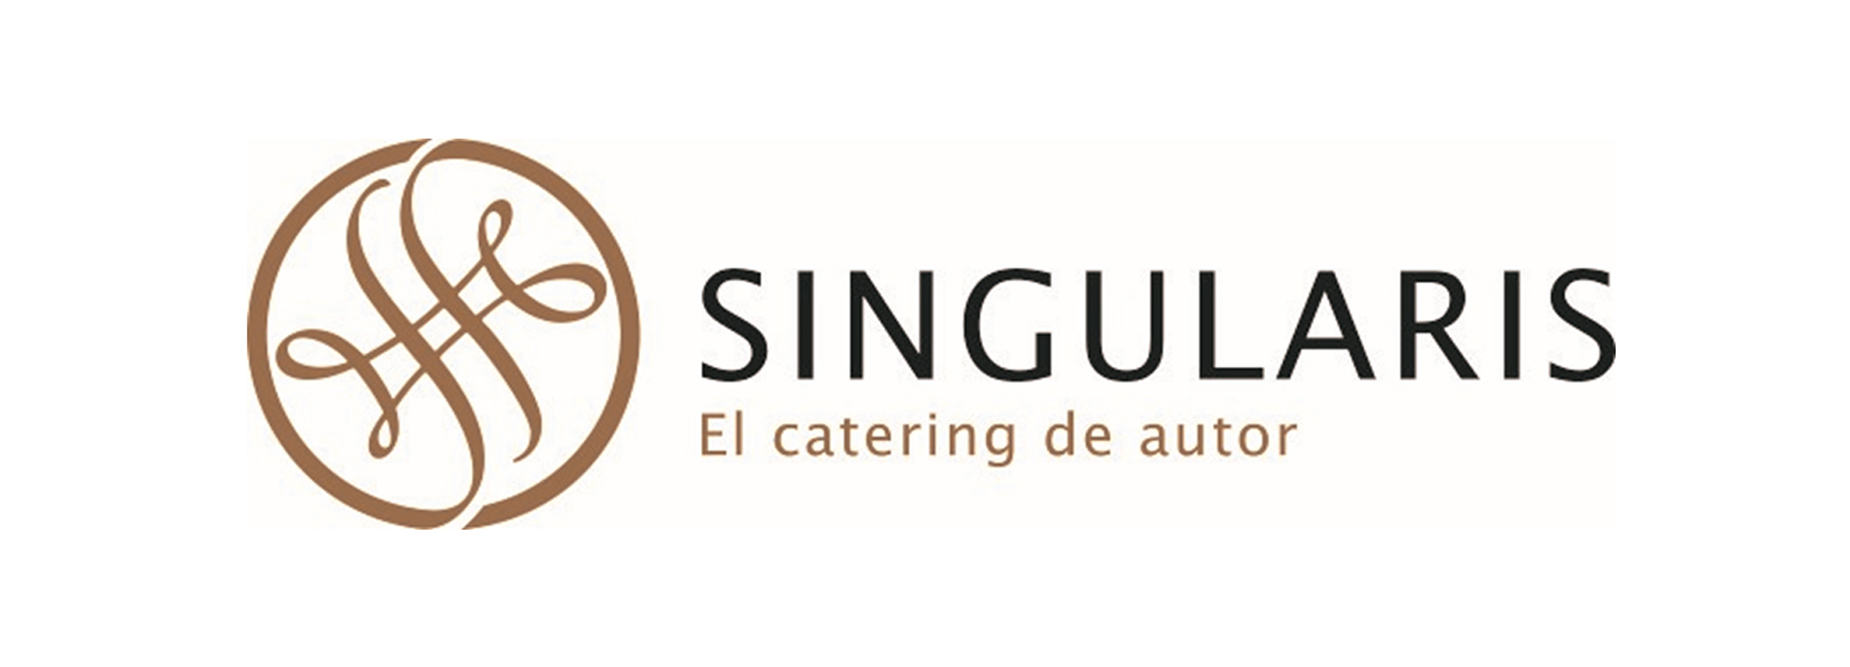 singularis catering lp